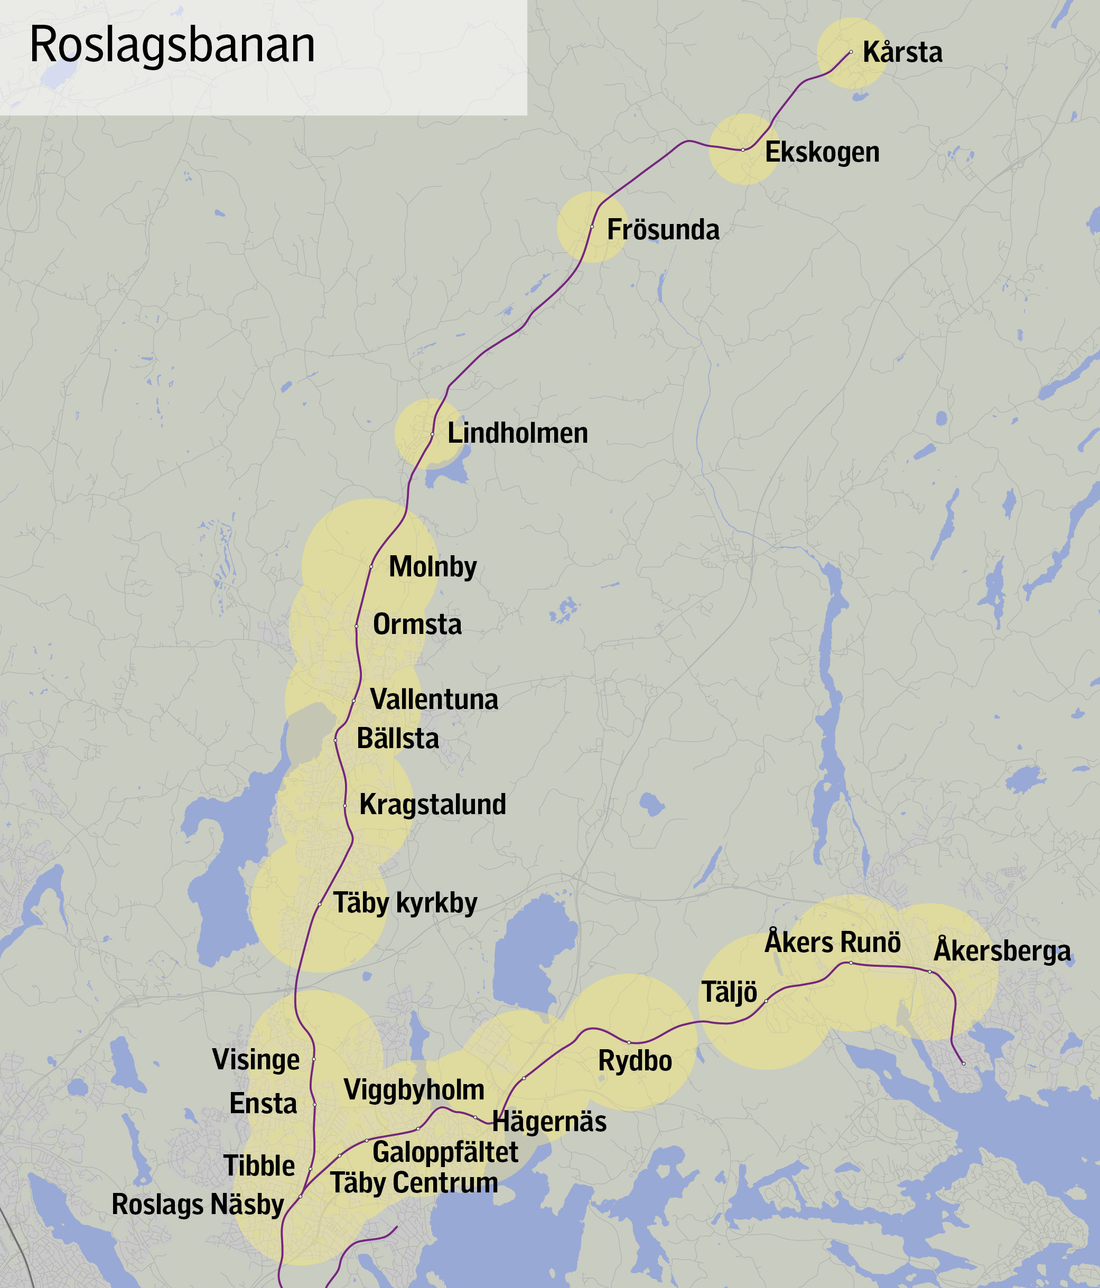 Tunnelbana till Älvsjö, Roslagsbana till T-centralen - Stockholm